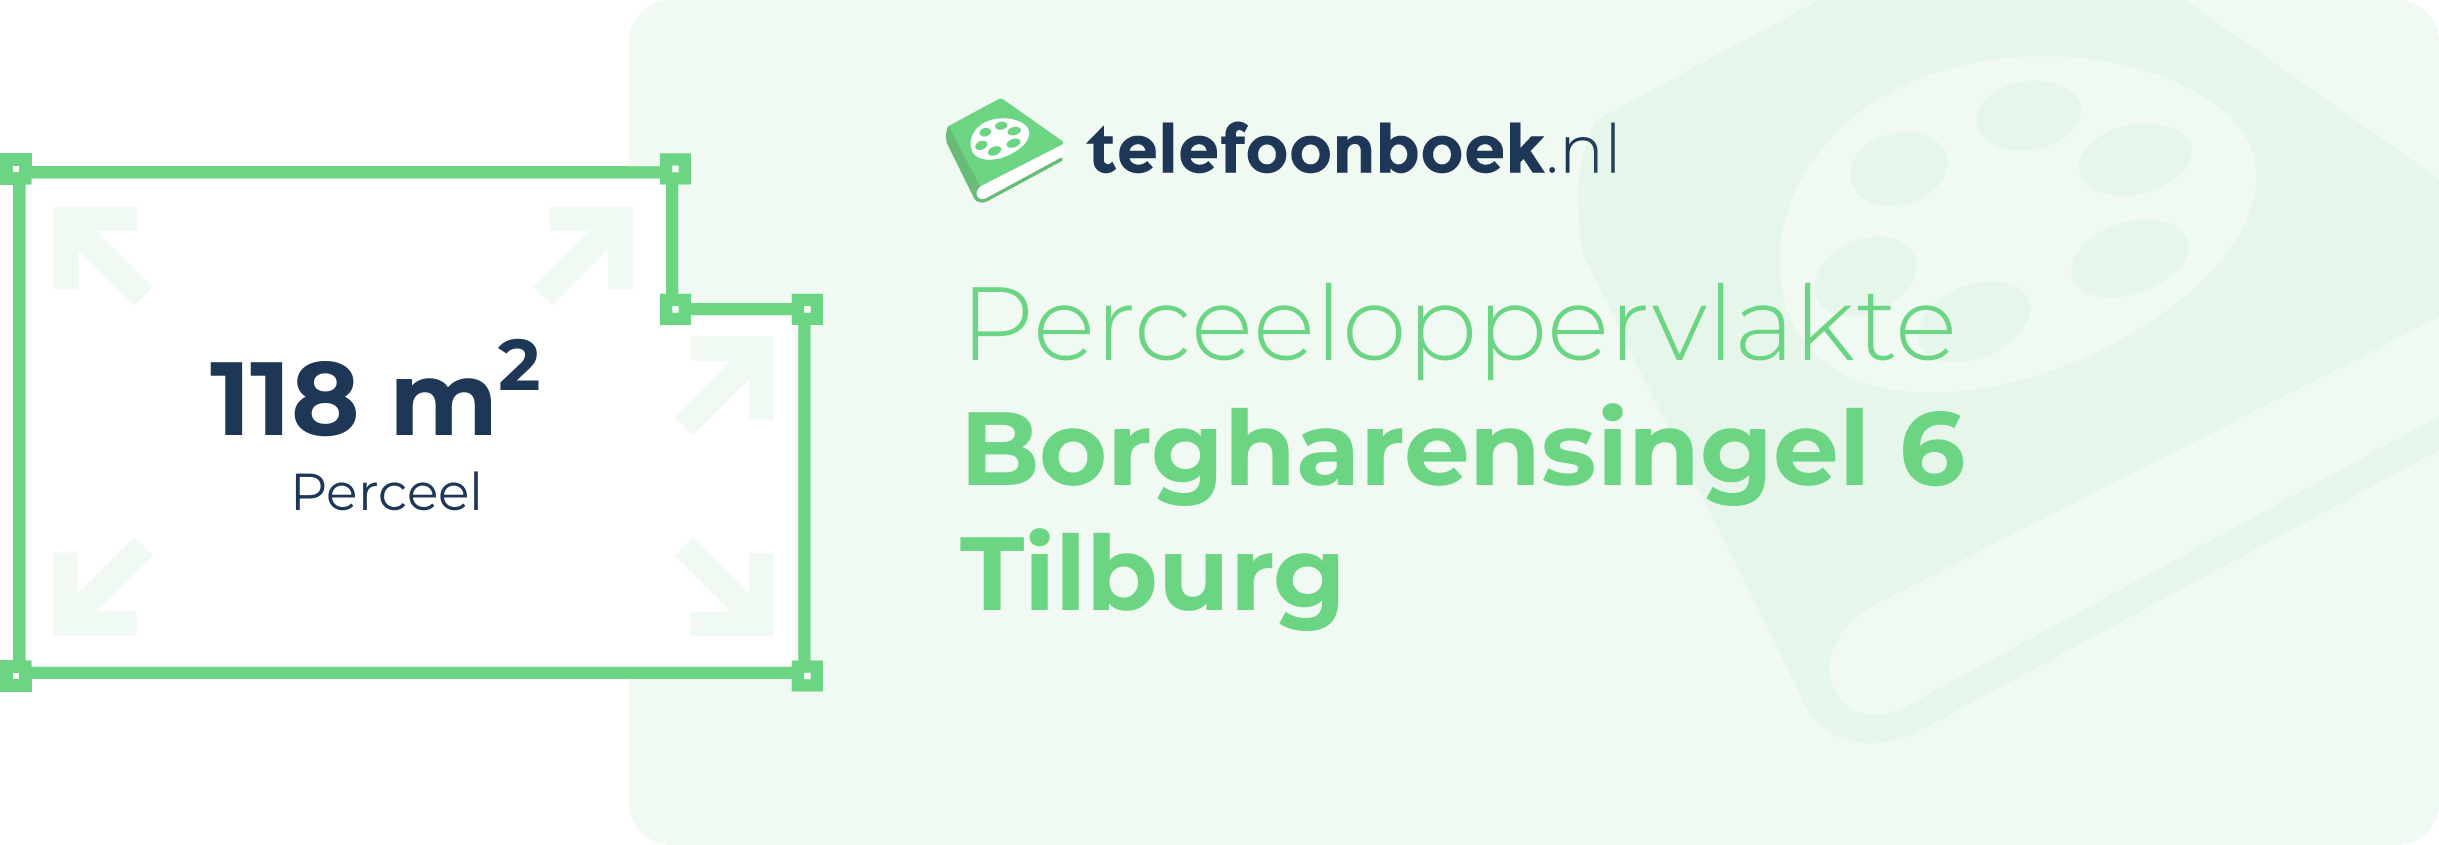 Perceeloppervlakte Borgharensingel 6 Tilburg